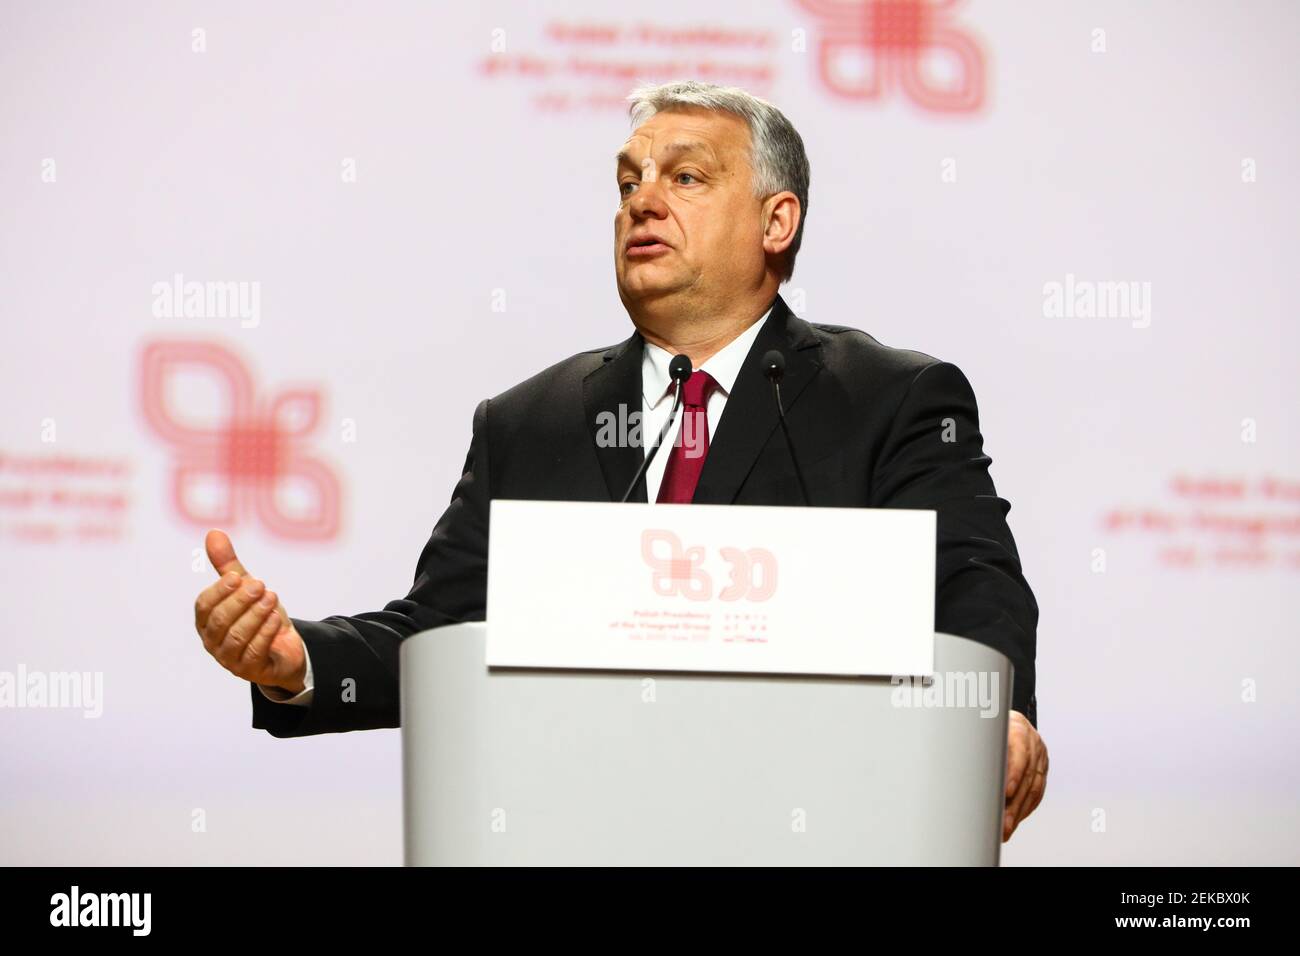 Der ungarische Ministerpräsident Victor Orban spricht während der Pressekonferenz. Gipfeltreffen der Regierungschefs der Visegrad-Gruppe (V4) anlässlich der Stockfoto